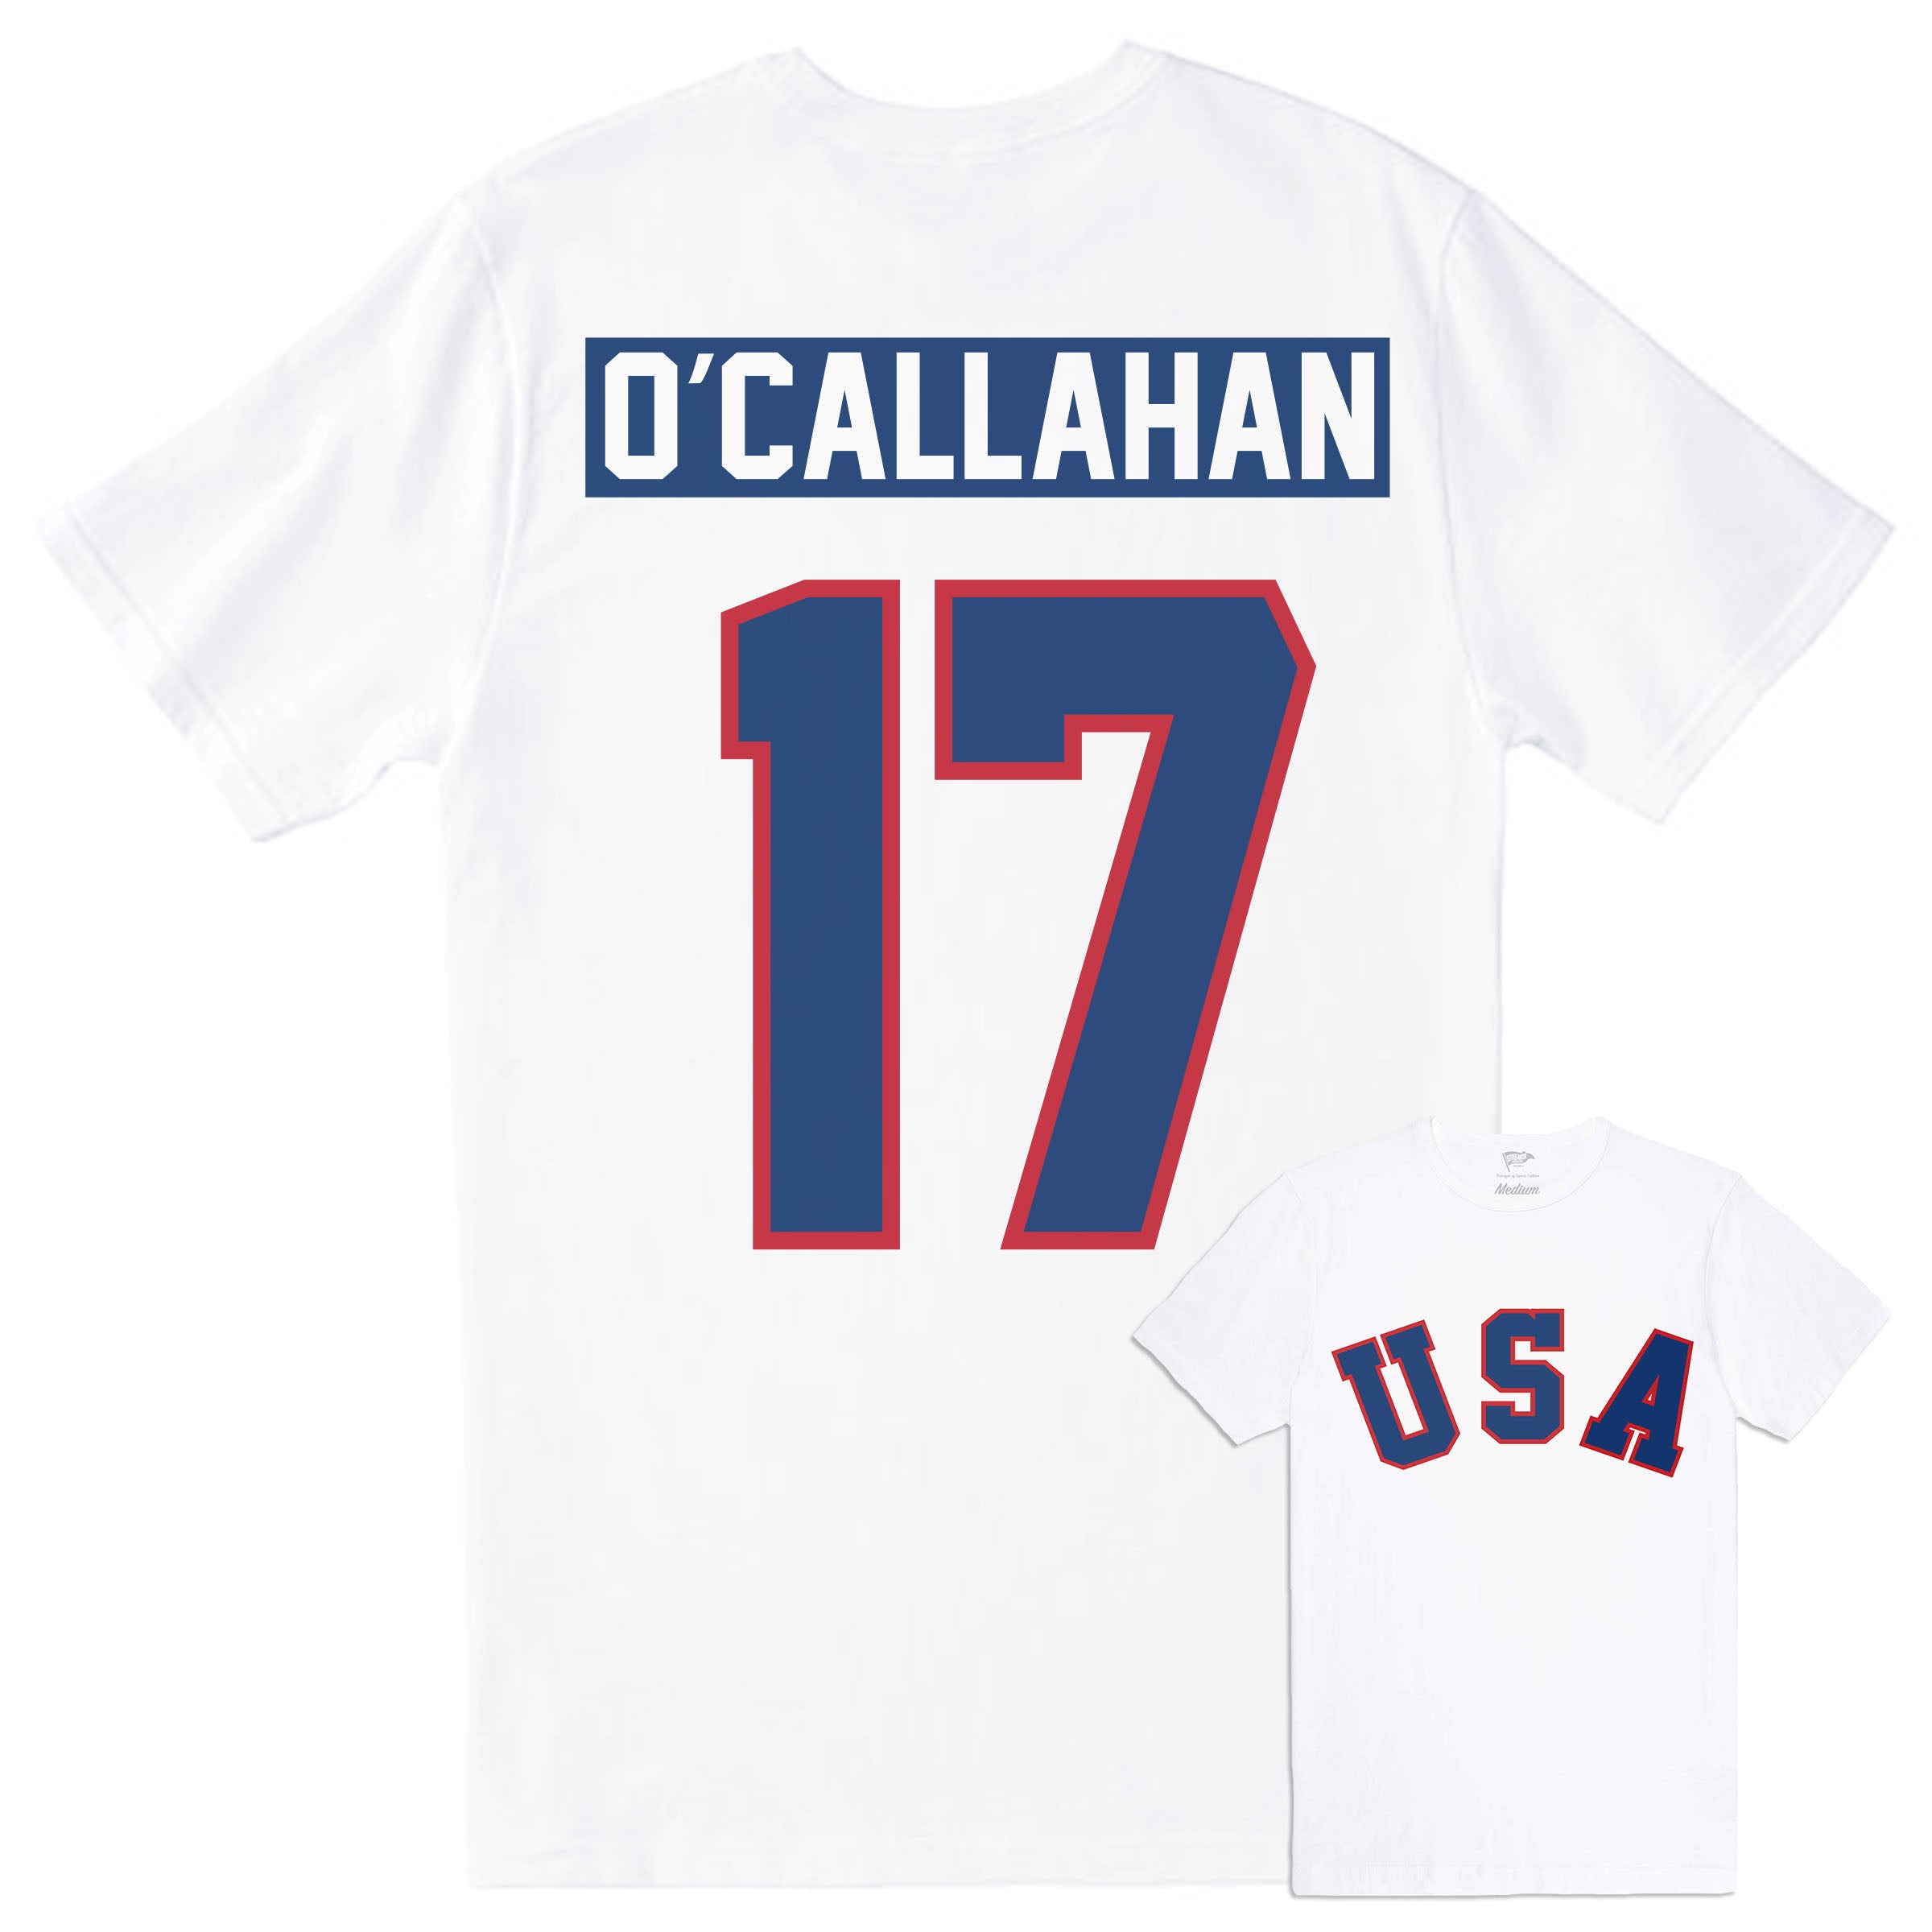 Jack O'Callahan Hockey Stats and Profile at